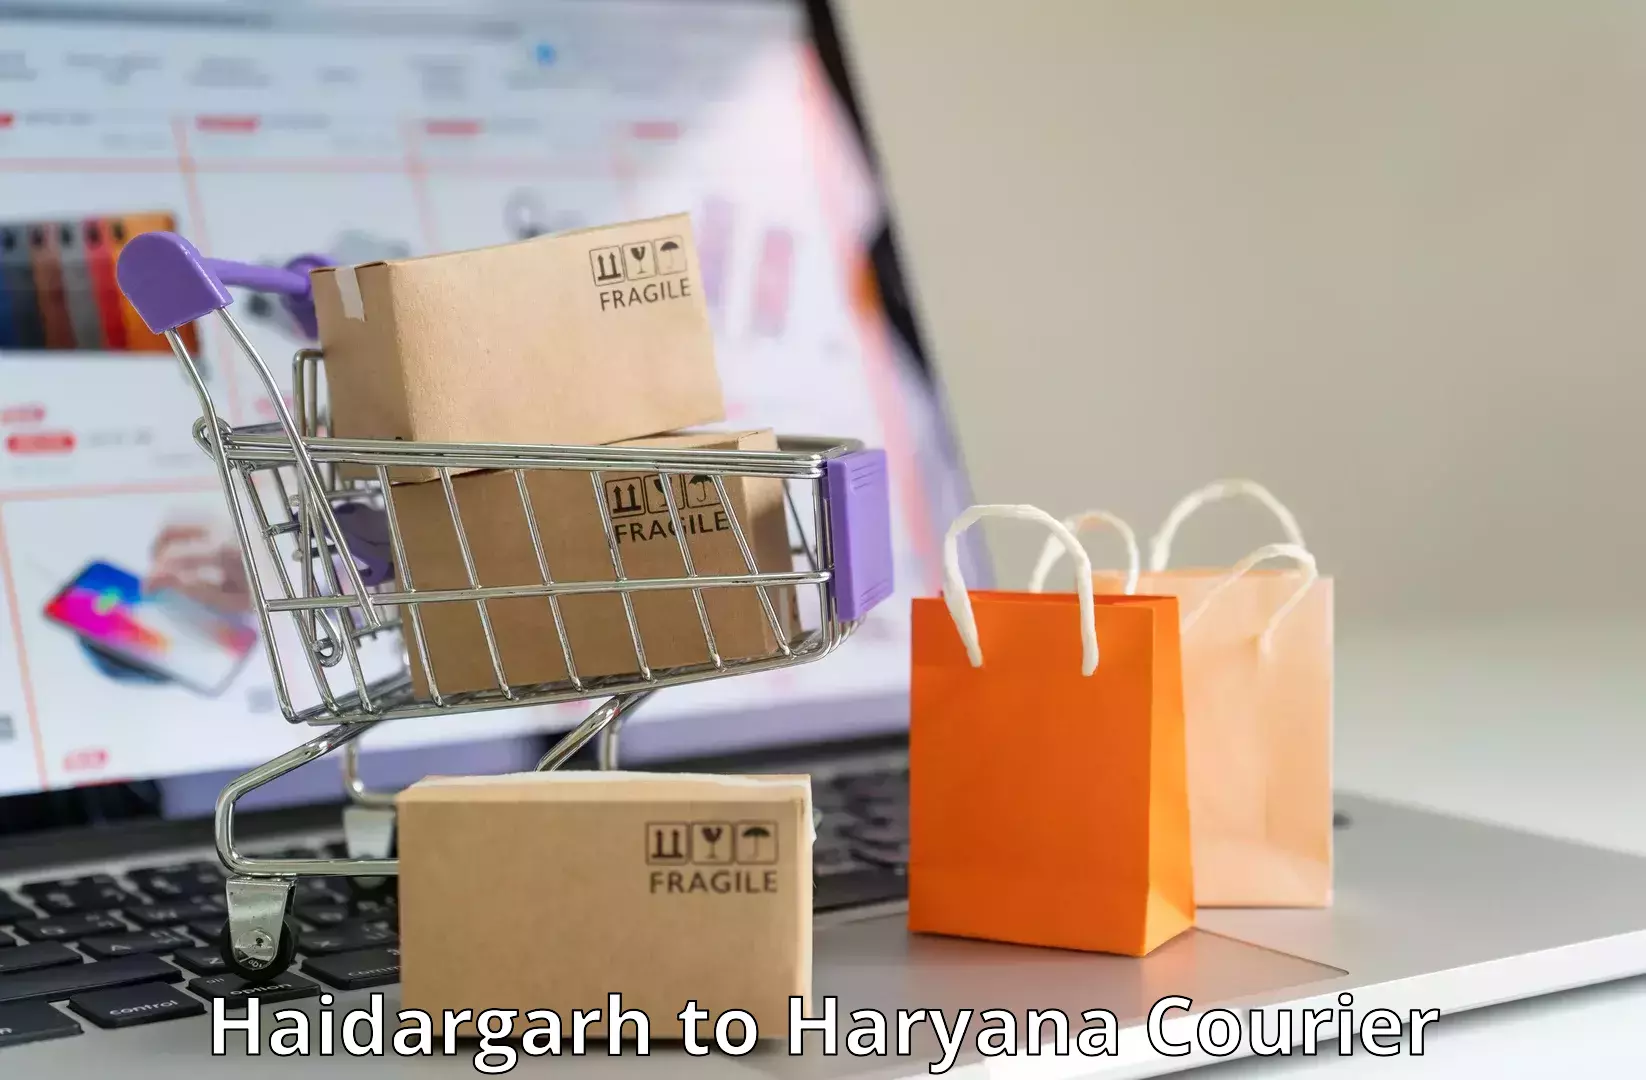 On-demand courier Haidargarh to Haryana